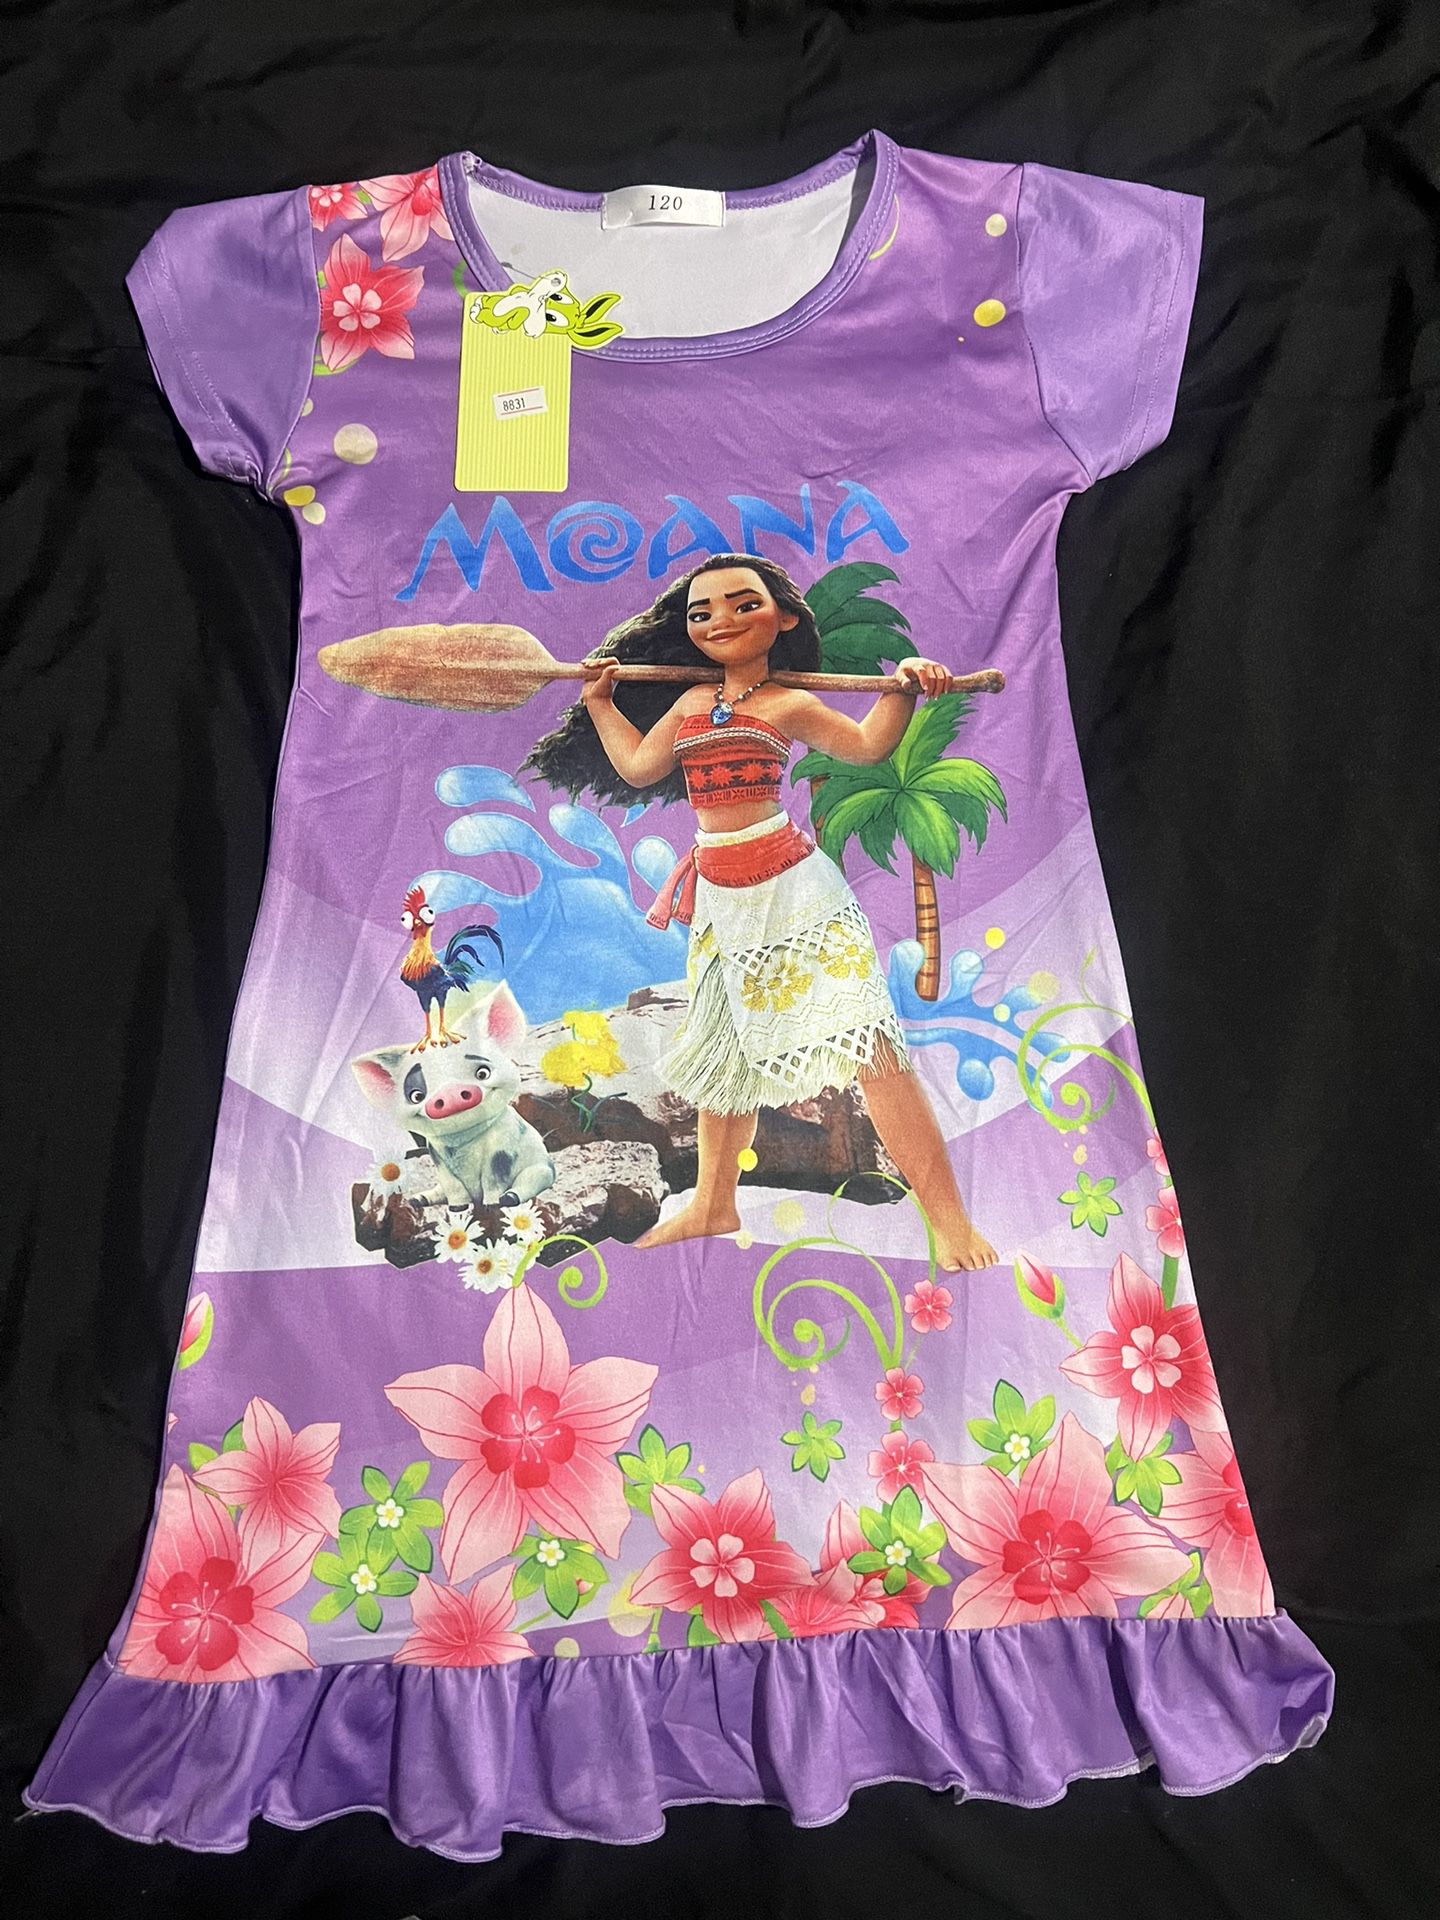  Moana Girls Kids Nightgown Pajamas/Sleepwear (New)